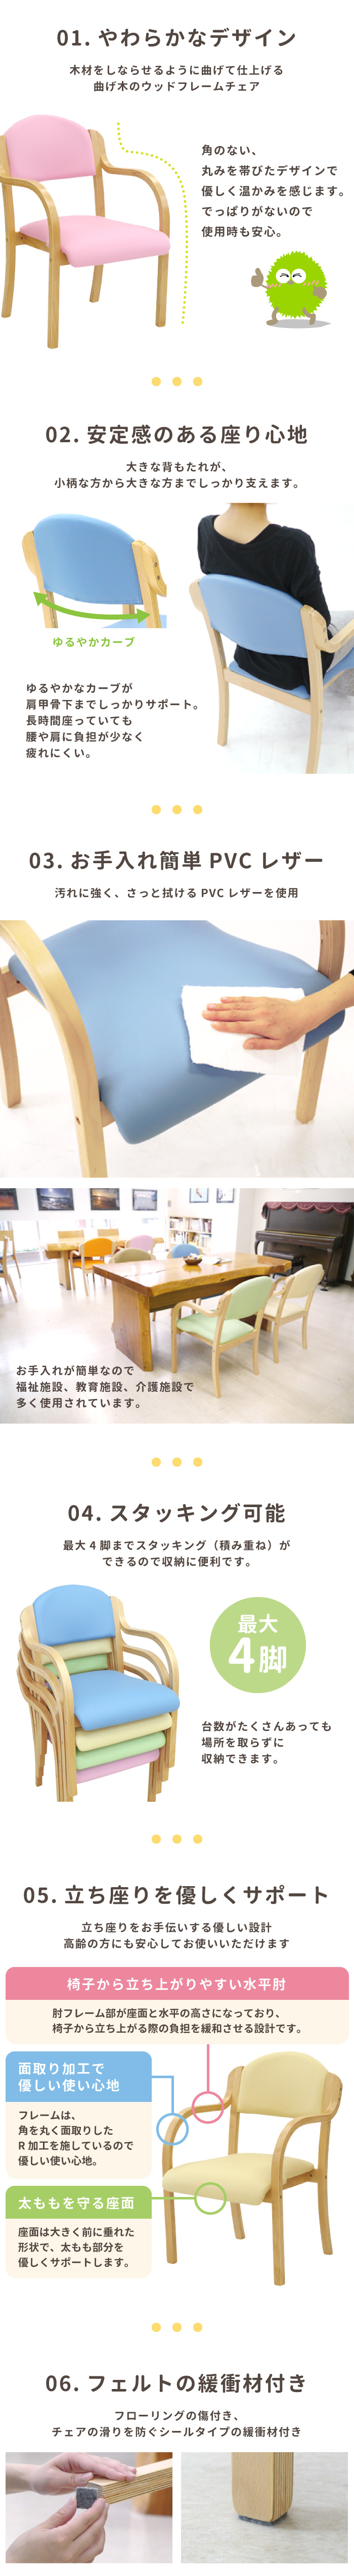 ダイニングチェア 介護椅子 肘付き 木製 レザー UHE-1-Sの通販 オフィス家具通販サイトのLOOKIT(ルキット)